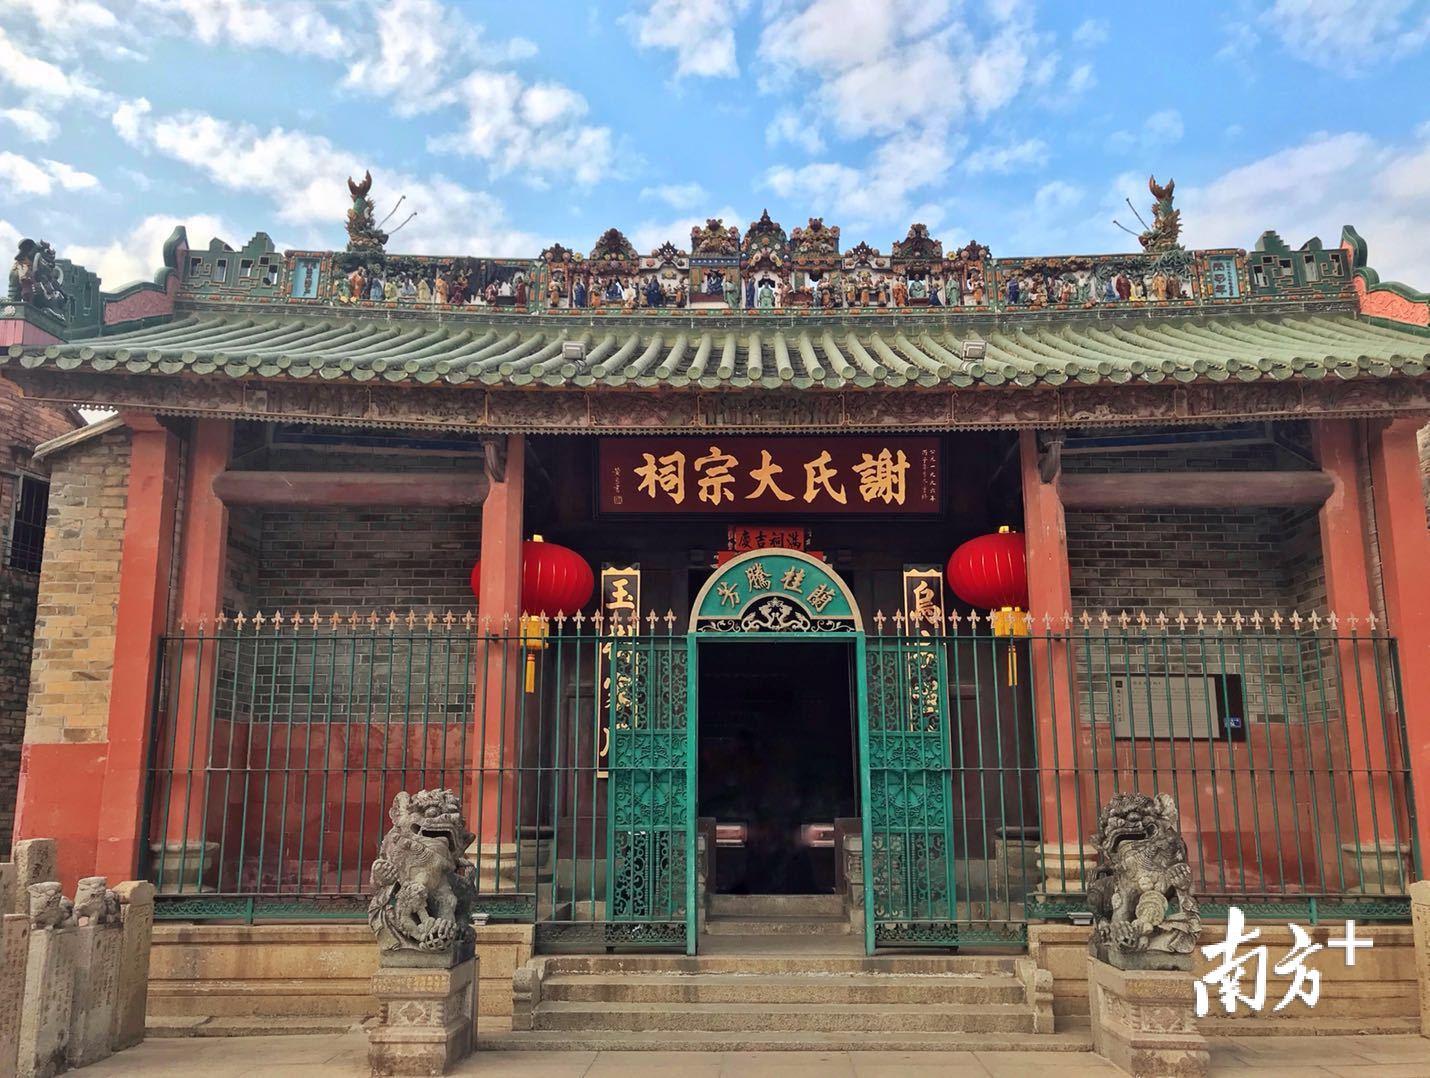 谢氏大宗祠是东莞南社村规模最大的三进三开间的祠堂.